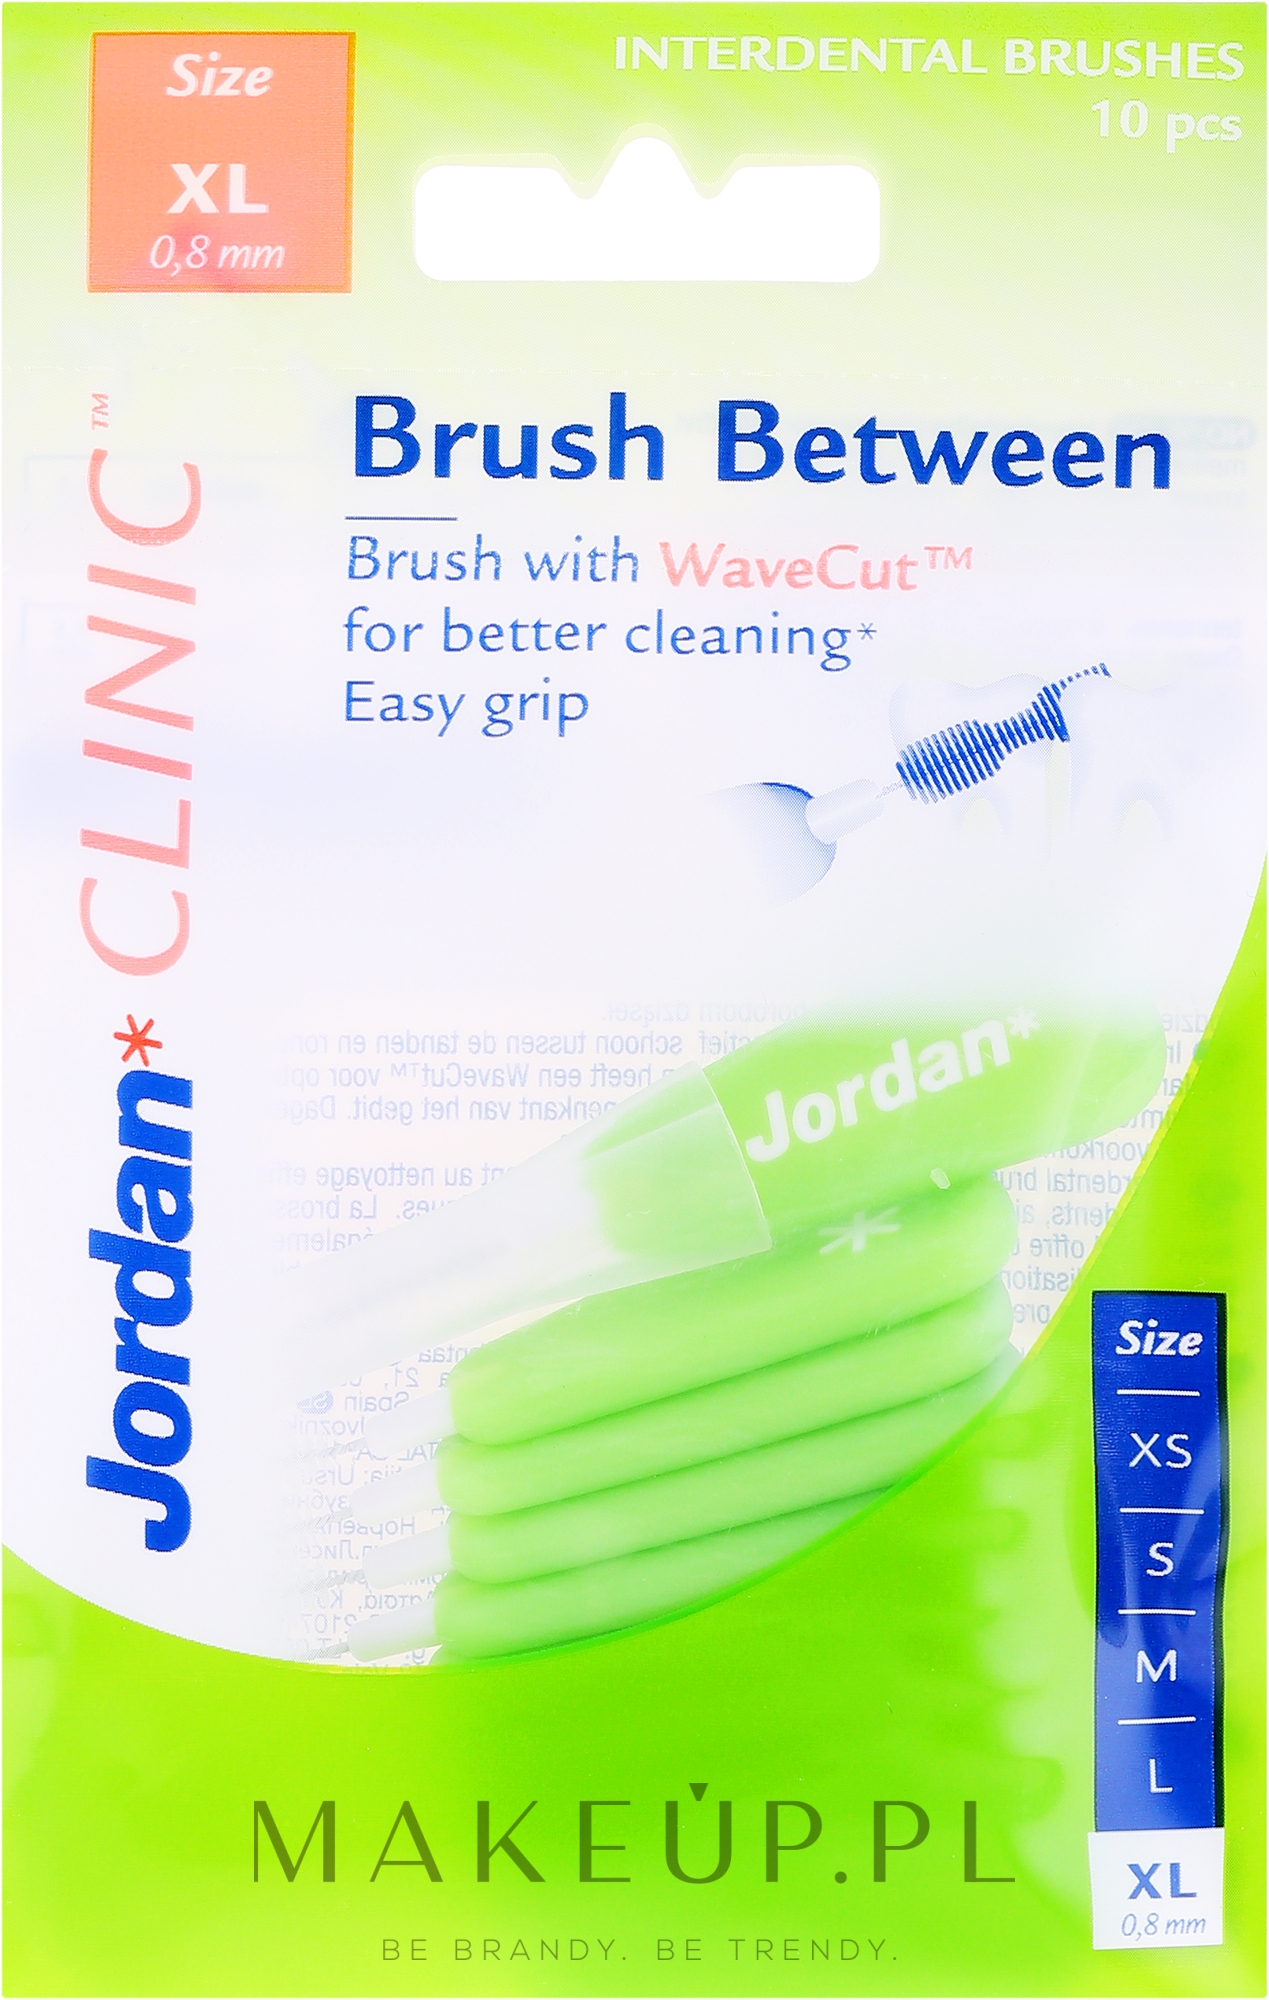 Szczoteczki do przestrzeni międzyzębowych, 0,8 mm XL, 10 szt. - Jordan Interdental Brush Clinic Brush Between — Zdjęcie 10 szt.